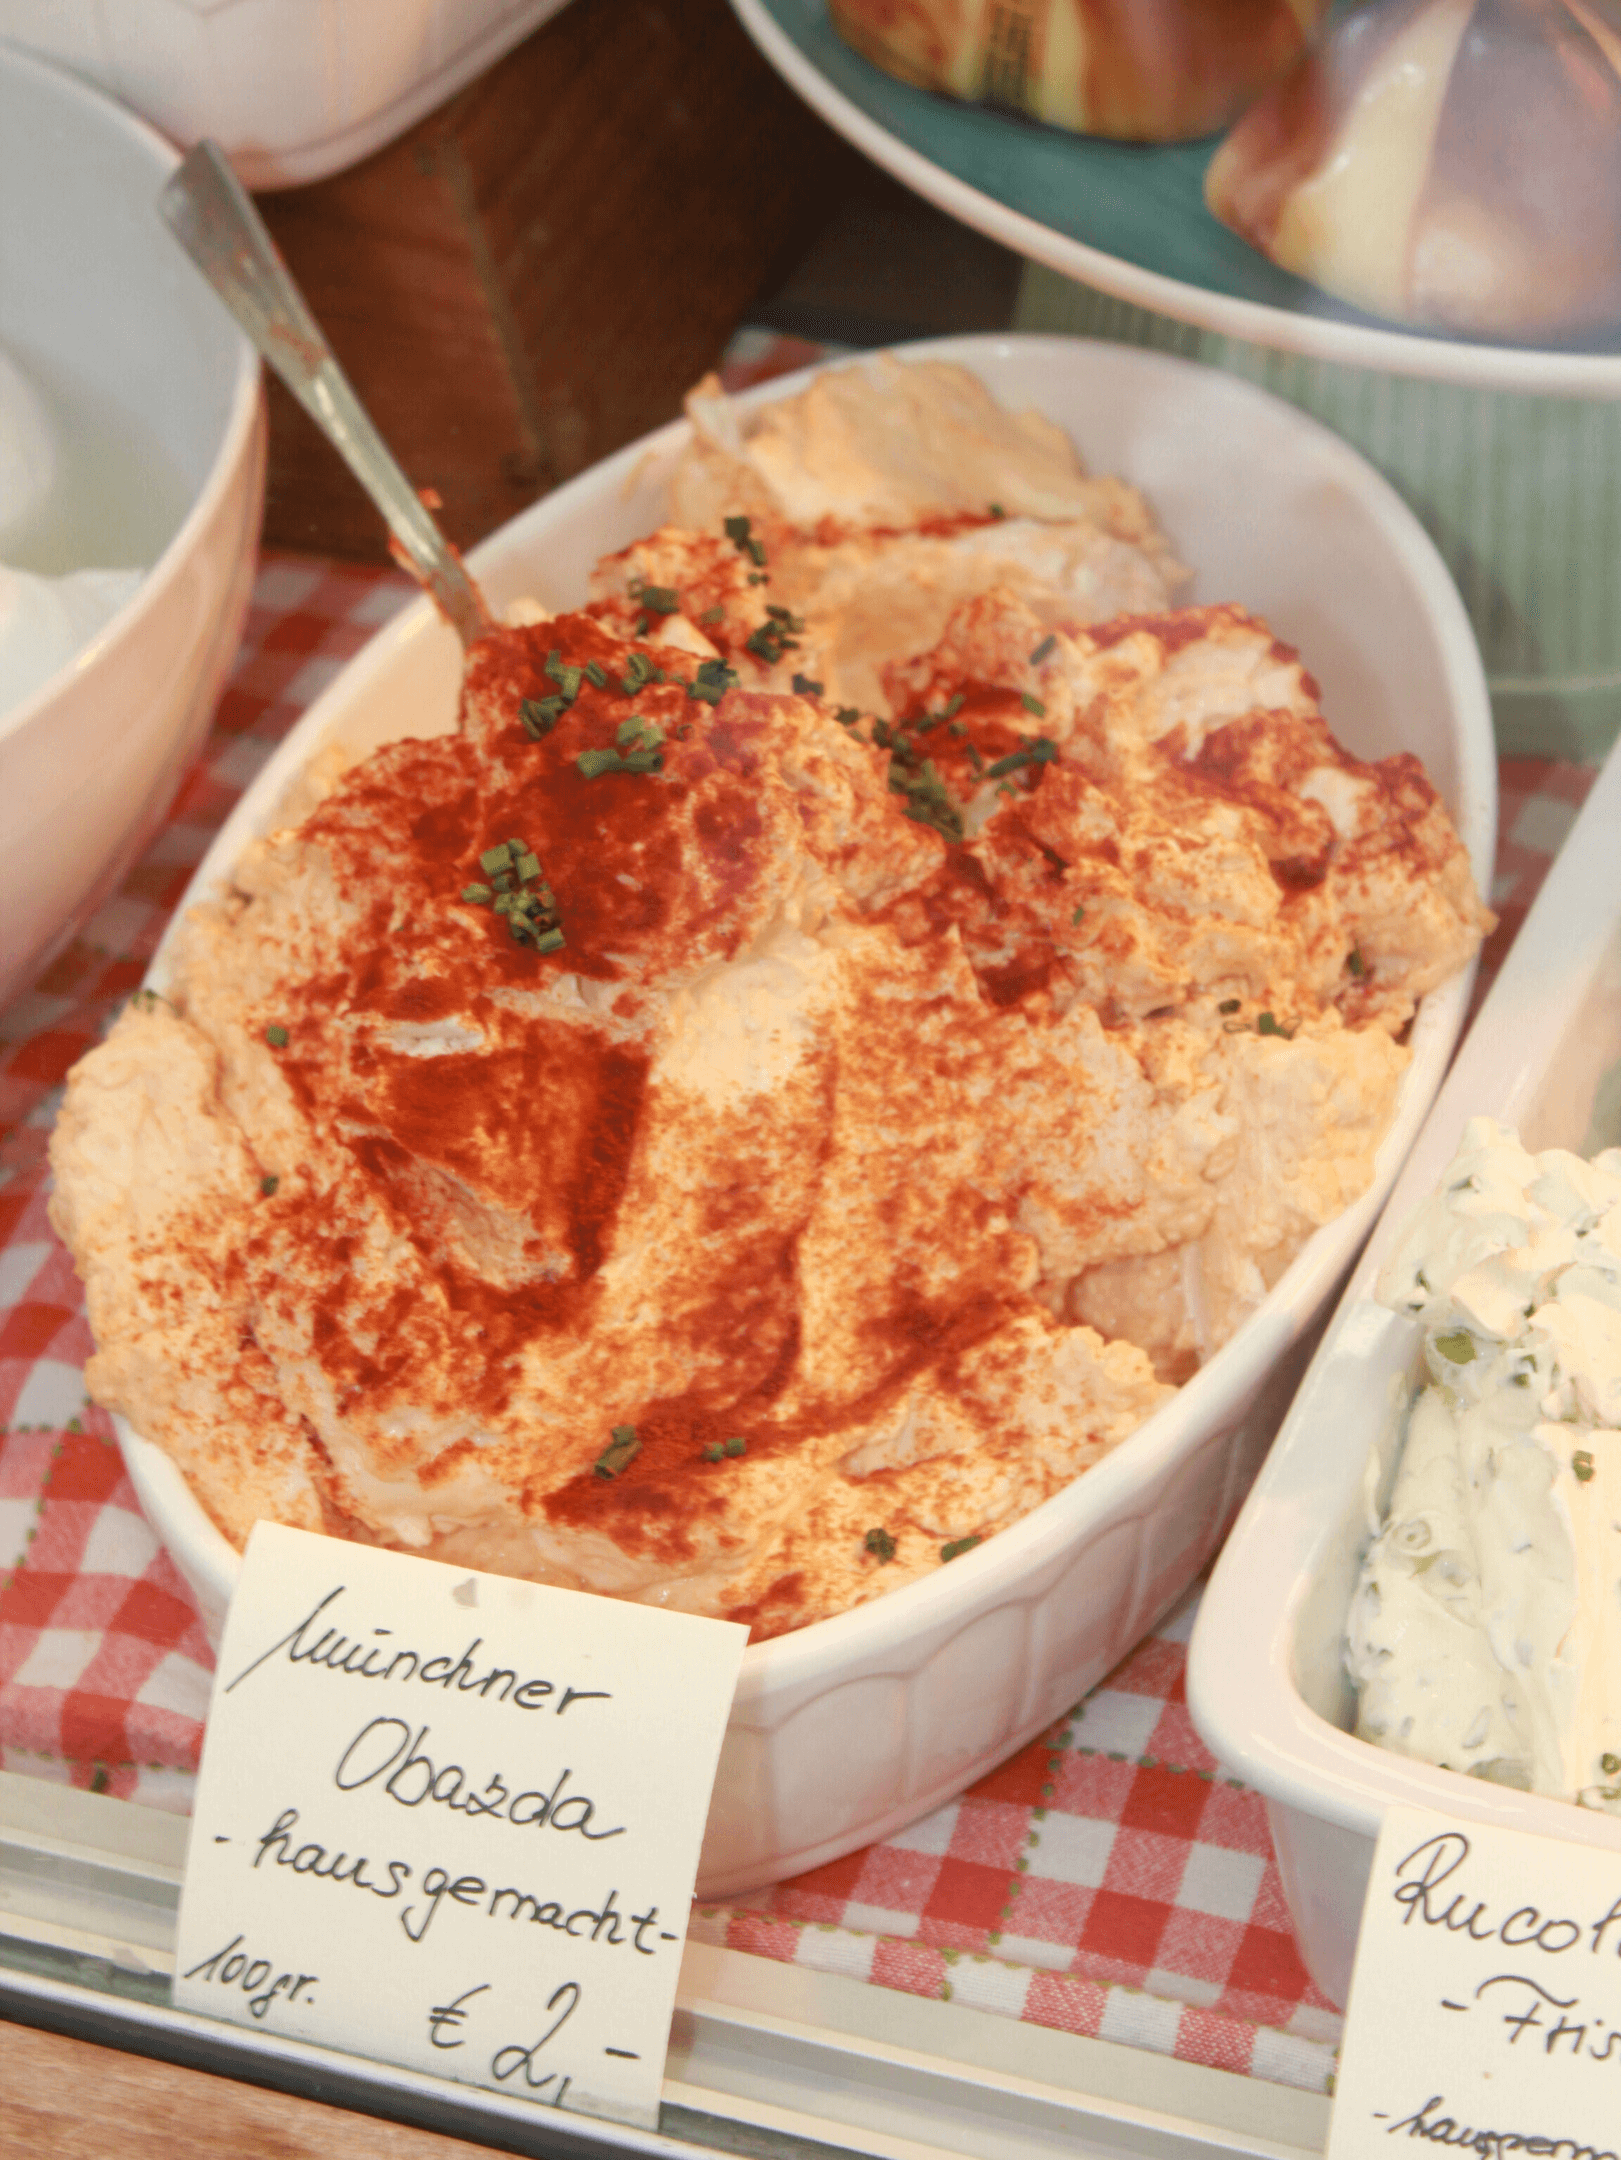 Traditional Cheese Spread Obazda at Viktualienmarkt in Munich